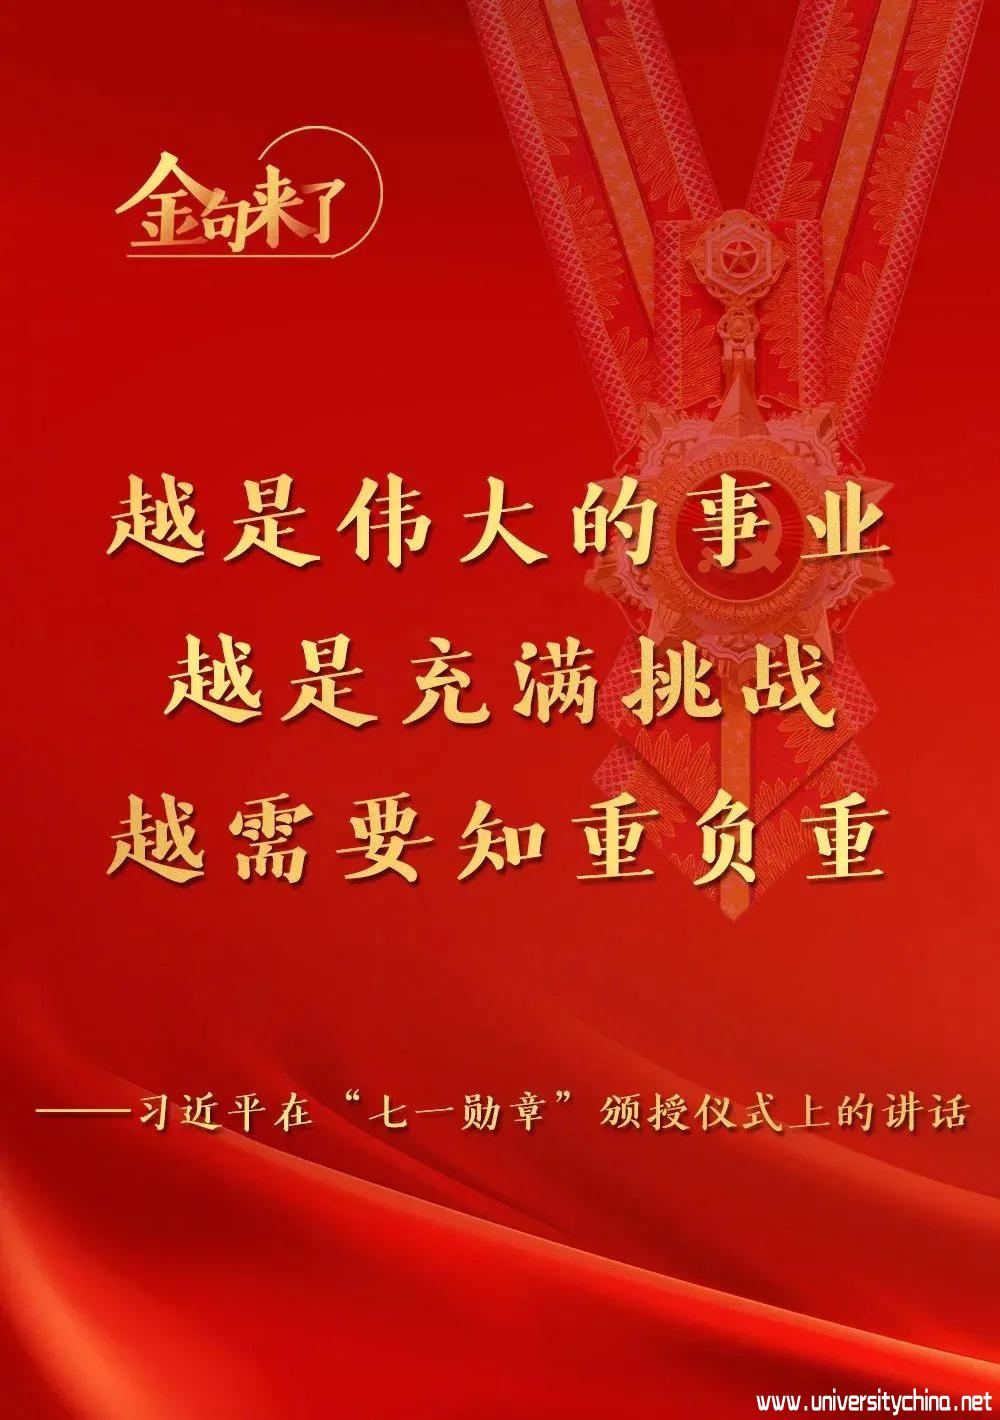 金句来了，习近平在庆祝中国共产党成立100周年“七一勋章”颁授仪式上发表重要讲话